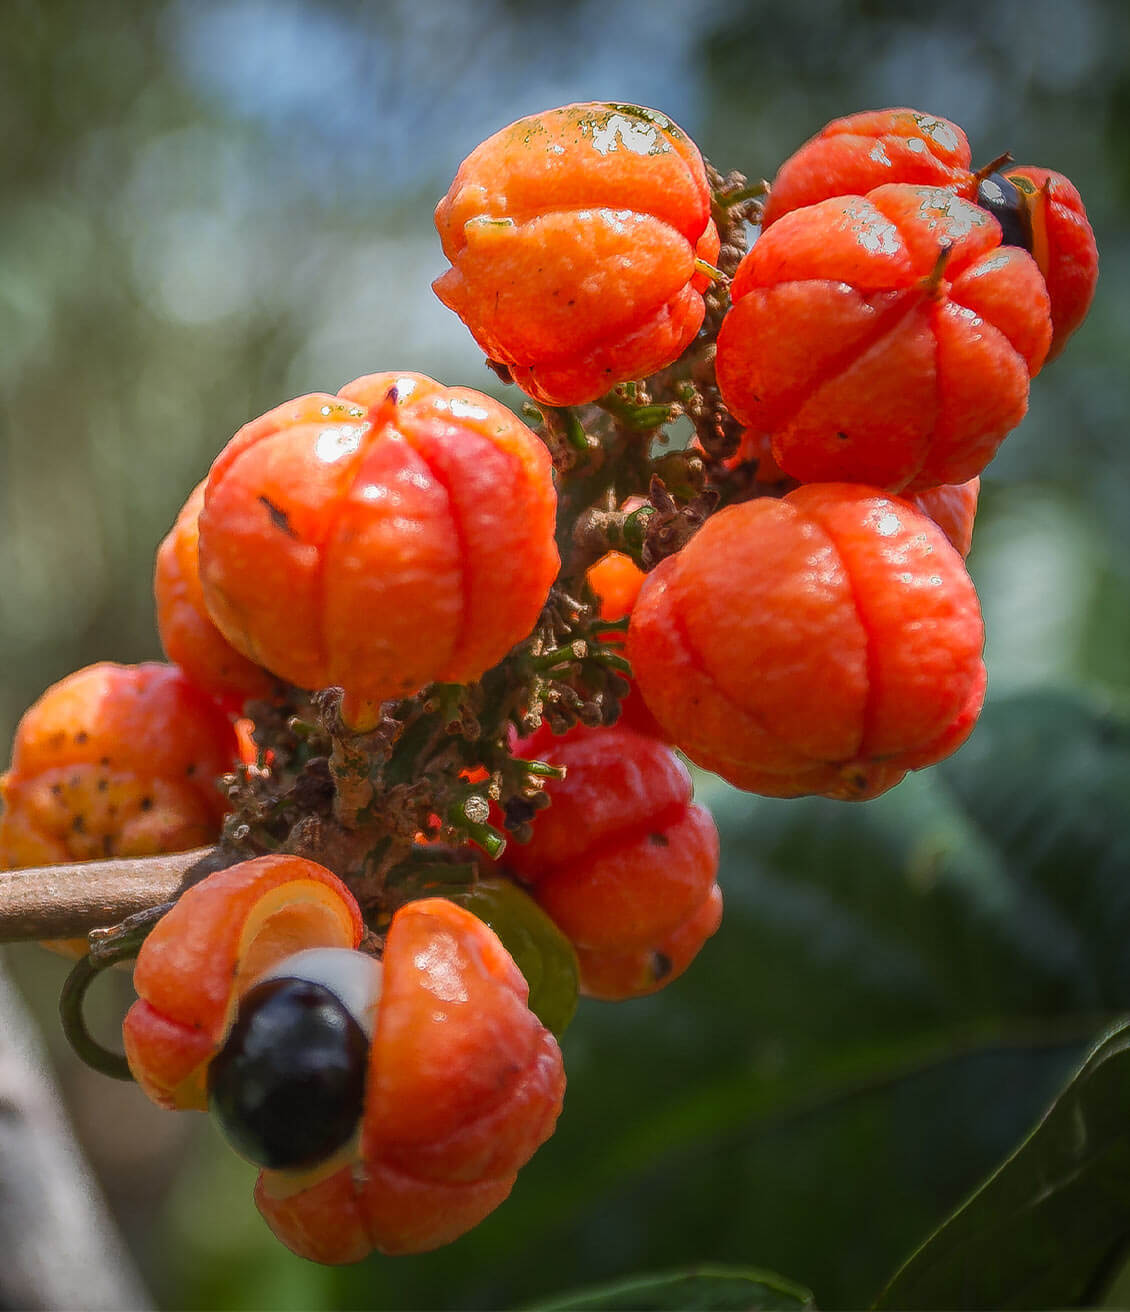 Le guarana est une plante originaire du Brésil, dont les graines des fruits jaune orangé ont des vertus stimulantes